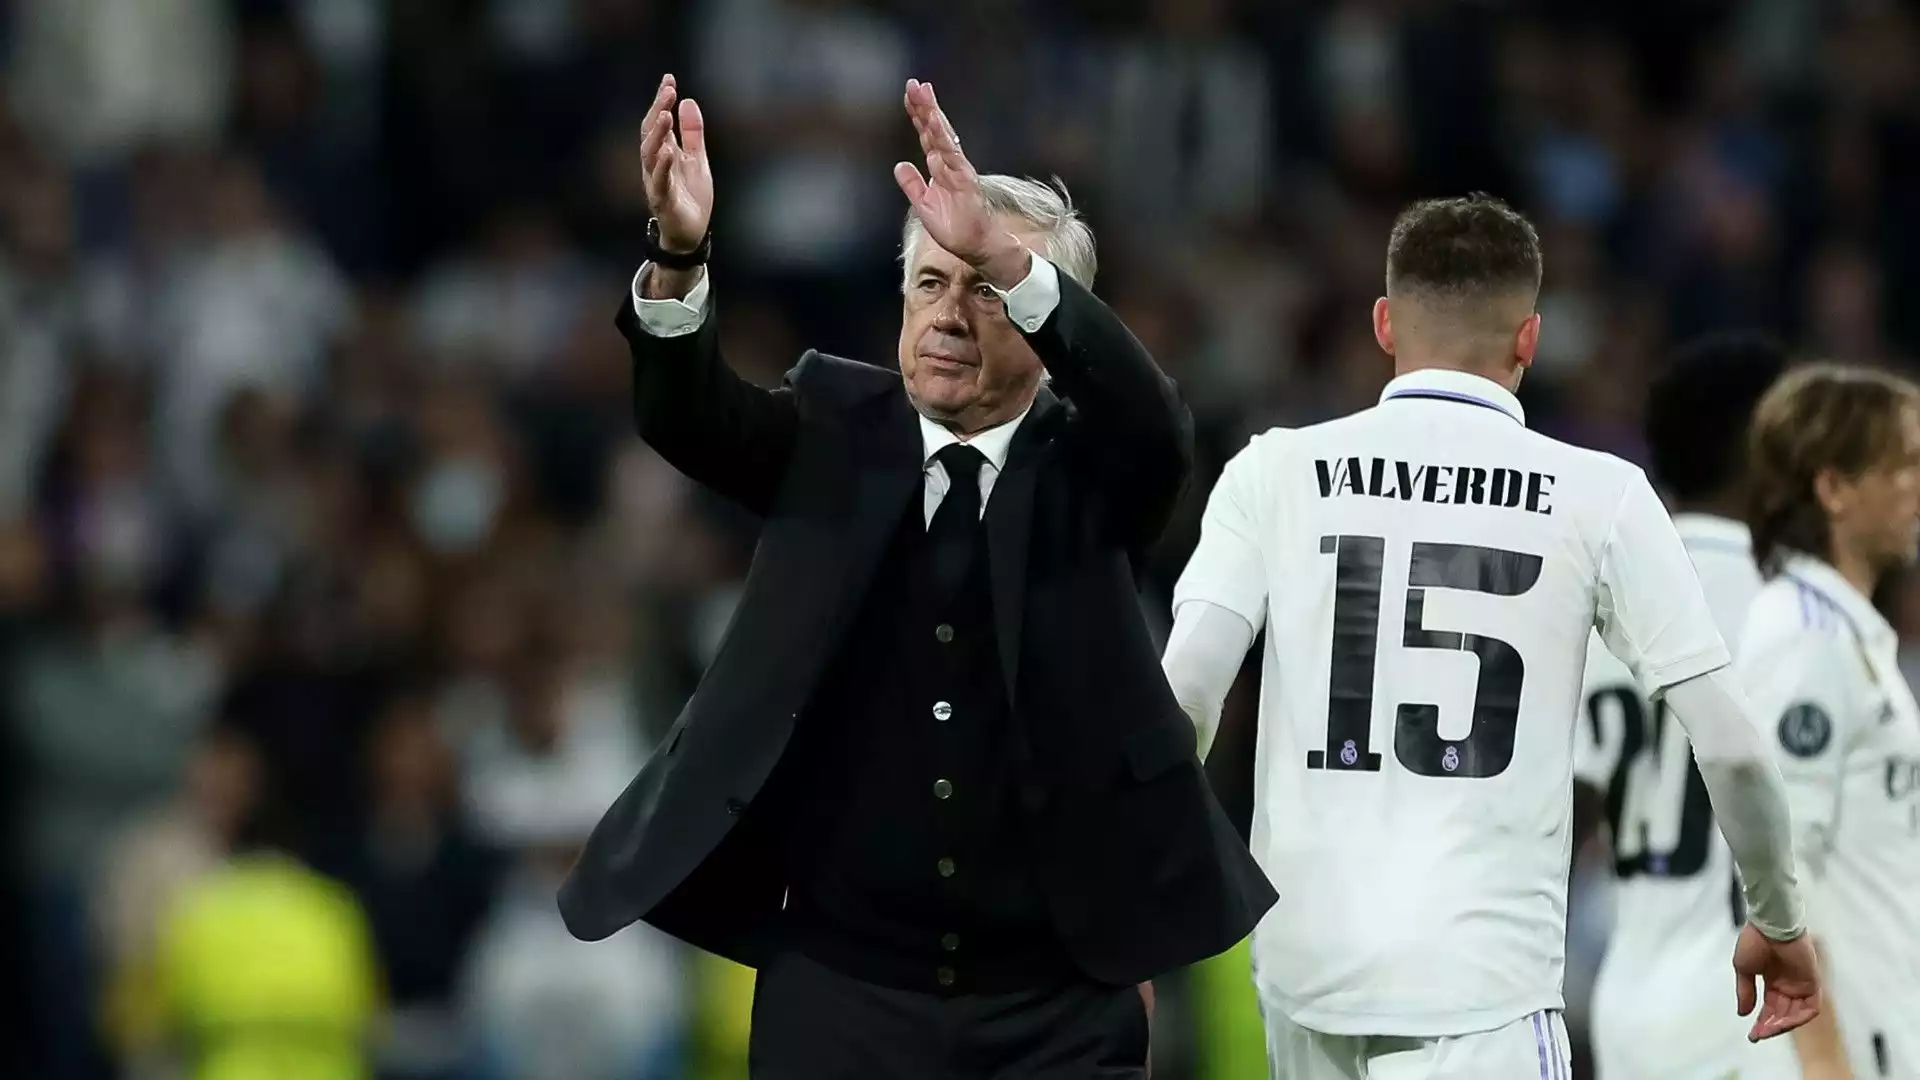 L'allenatore italiano è diventato il più vincente in Champions League sulla panchina del Real Madrid